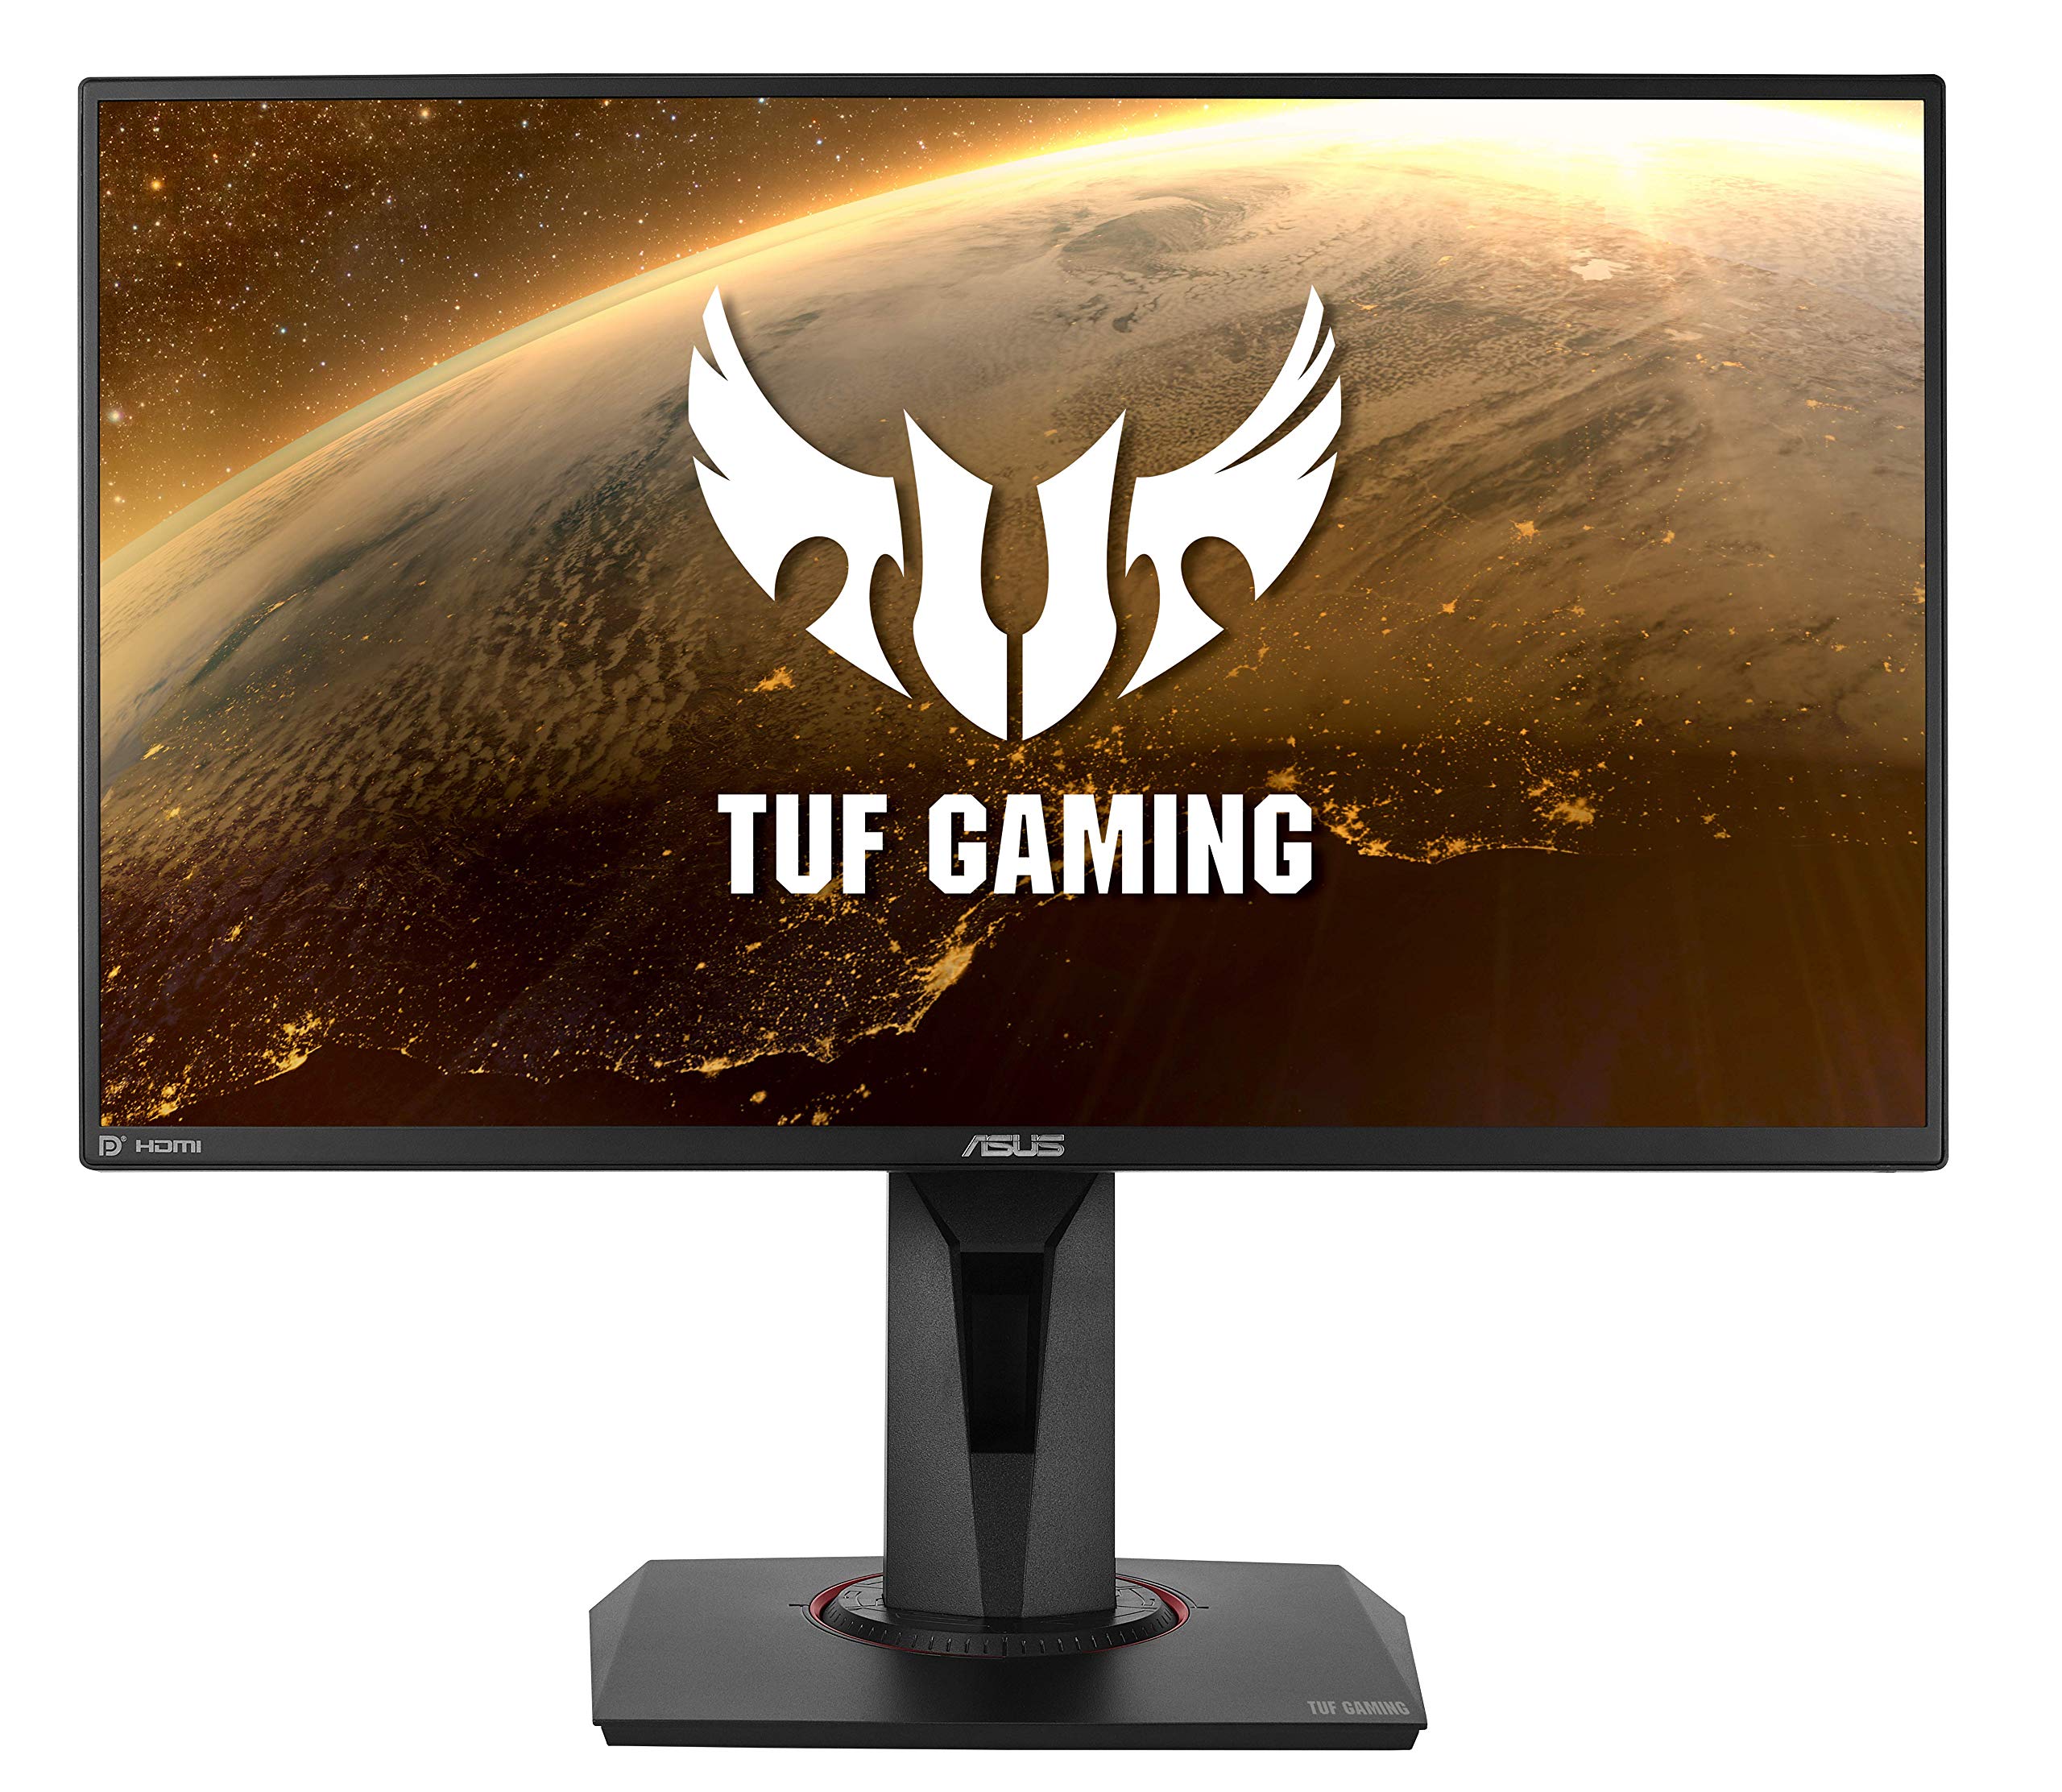 ASUS TUF Gaming Monitor VG259QM Amazon $230